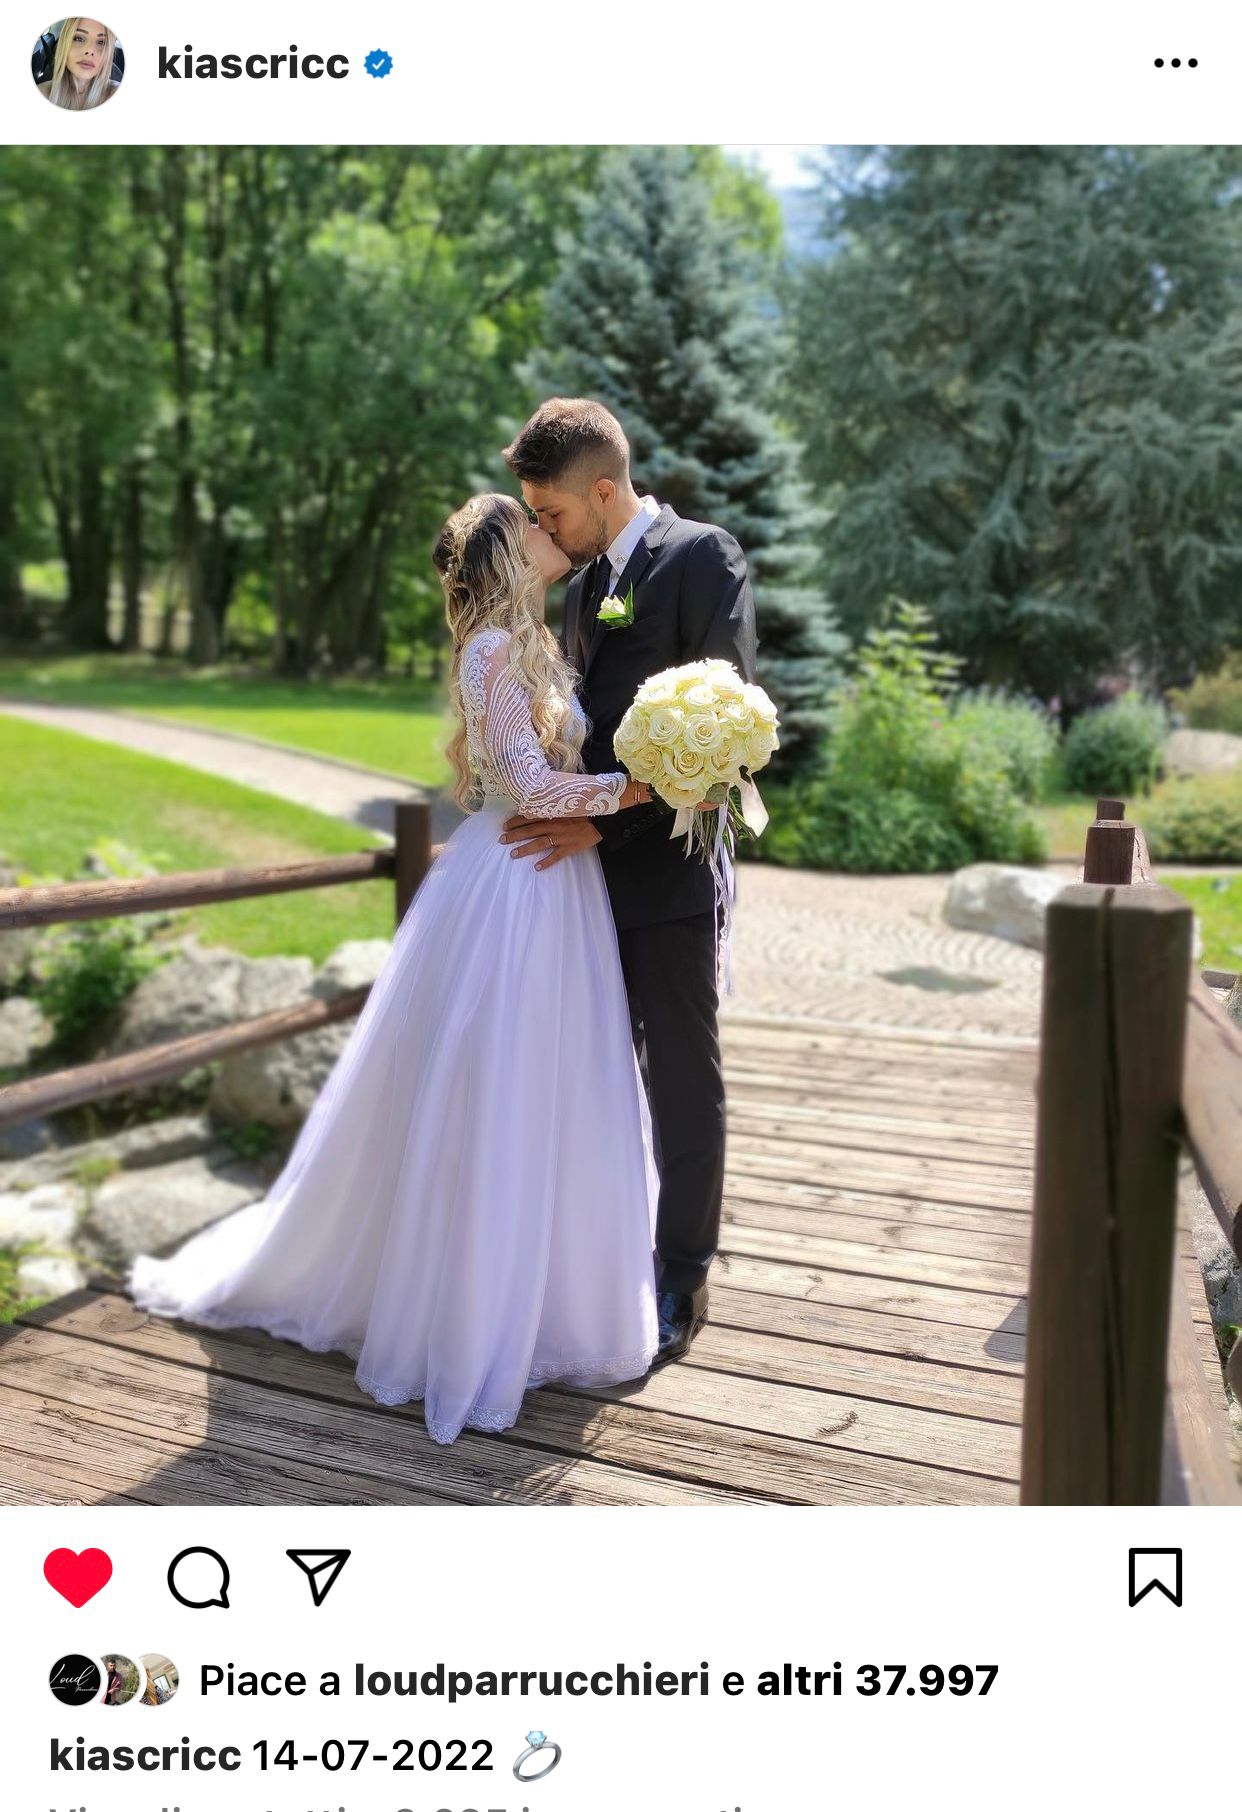 Il matrimonio di Chiara Facchetti su Instagram